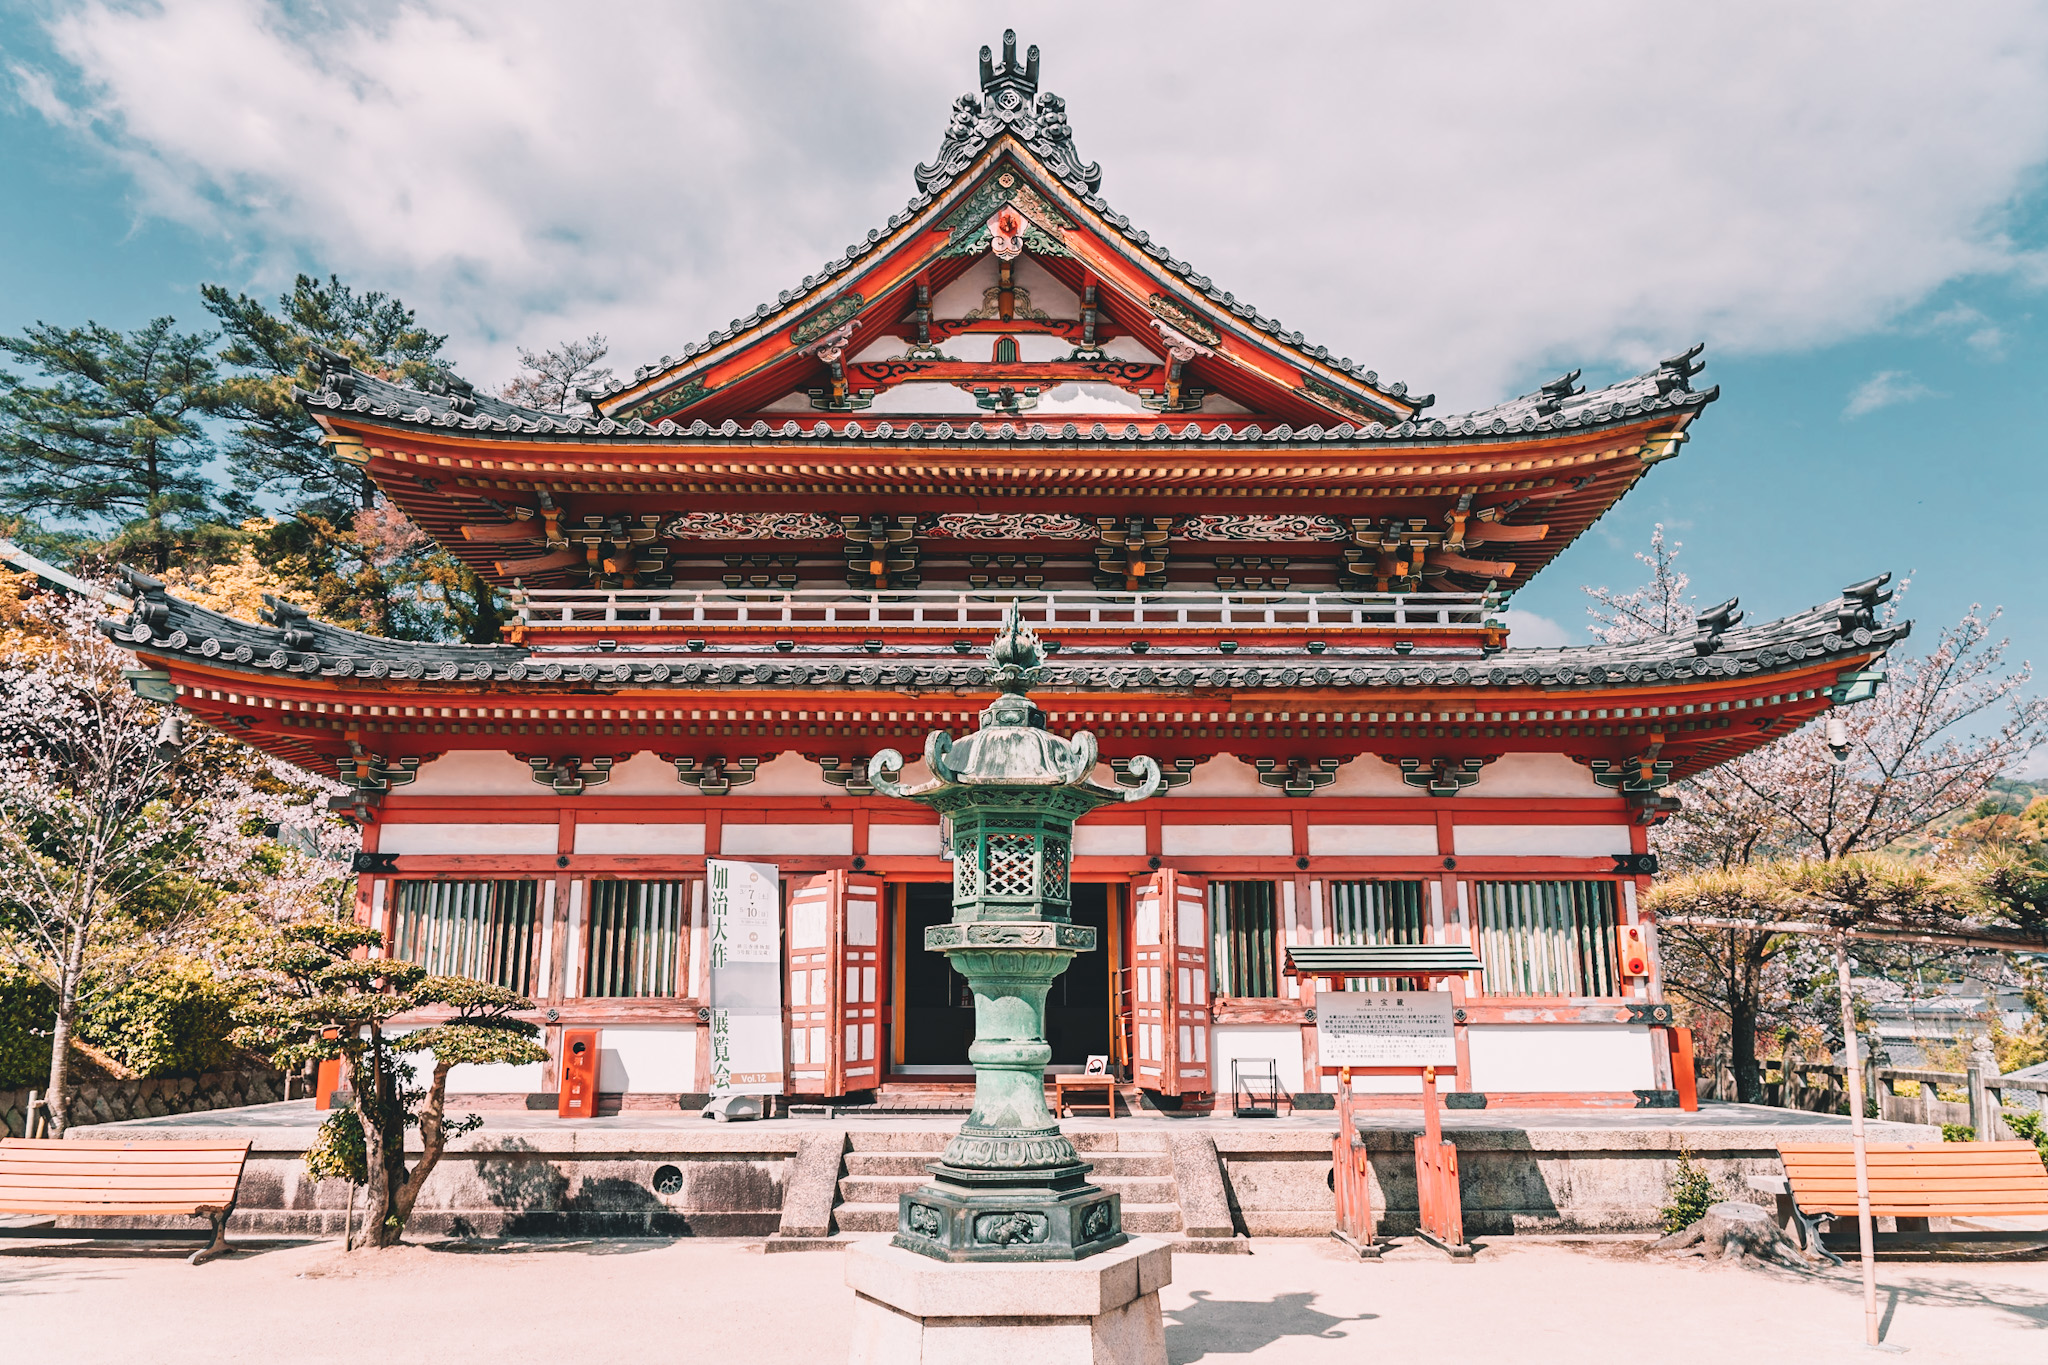 Annie Miller explores the Kousanji Temples